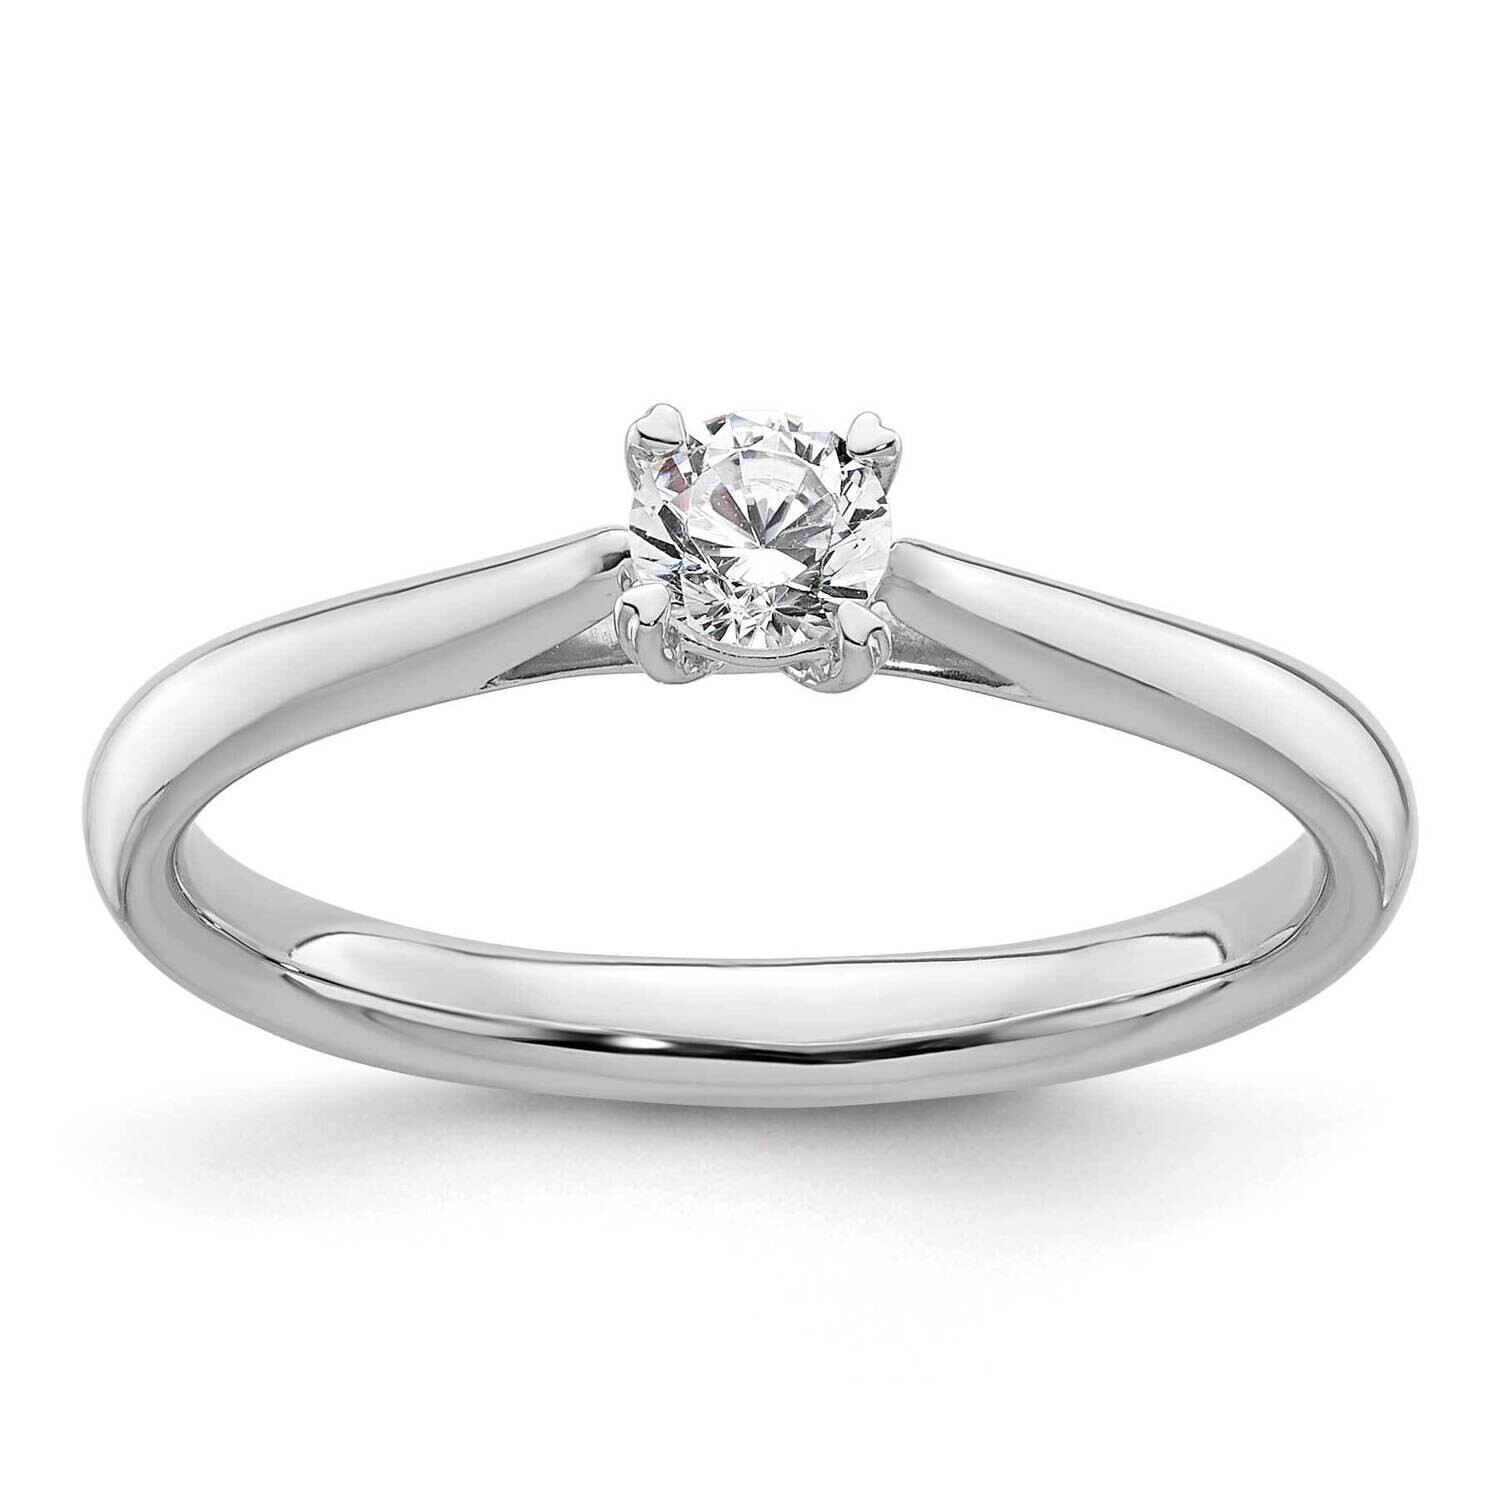 True Origin 1/4 Carat Diamond Vs/Si D E F Round Solitare Engagement Ring 14k White Gold RM1930E-025-WAA